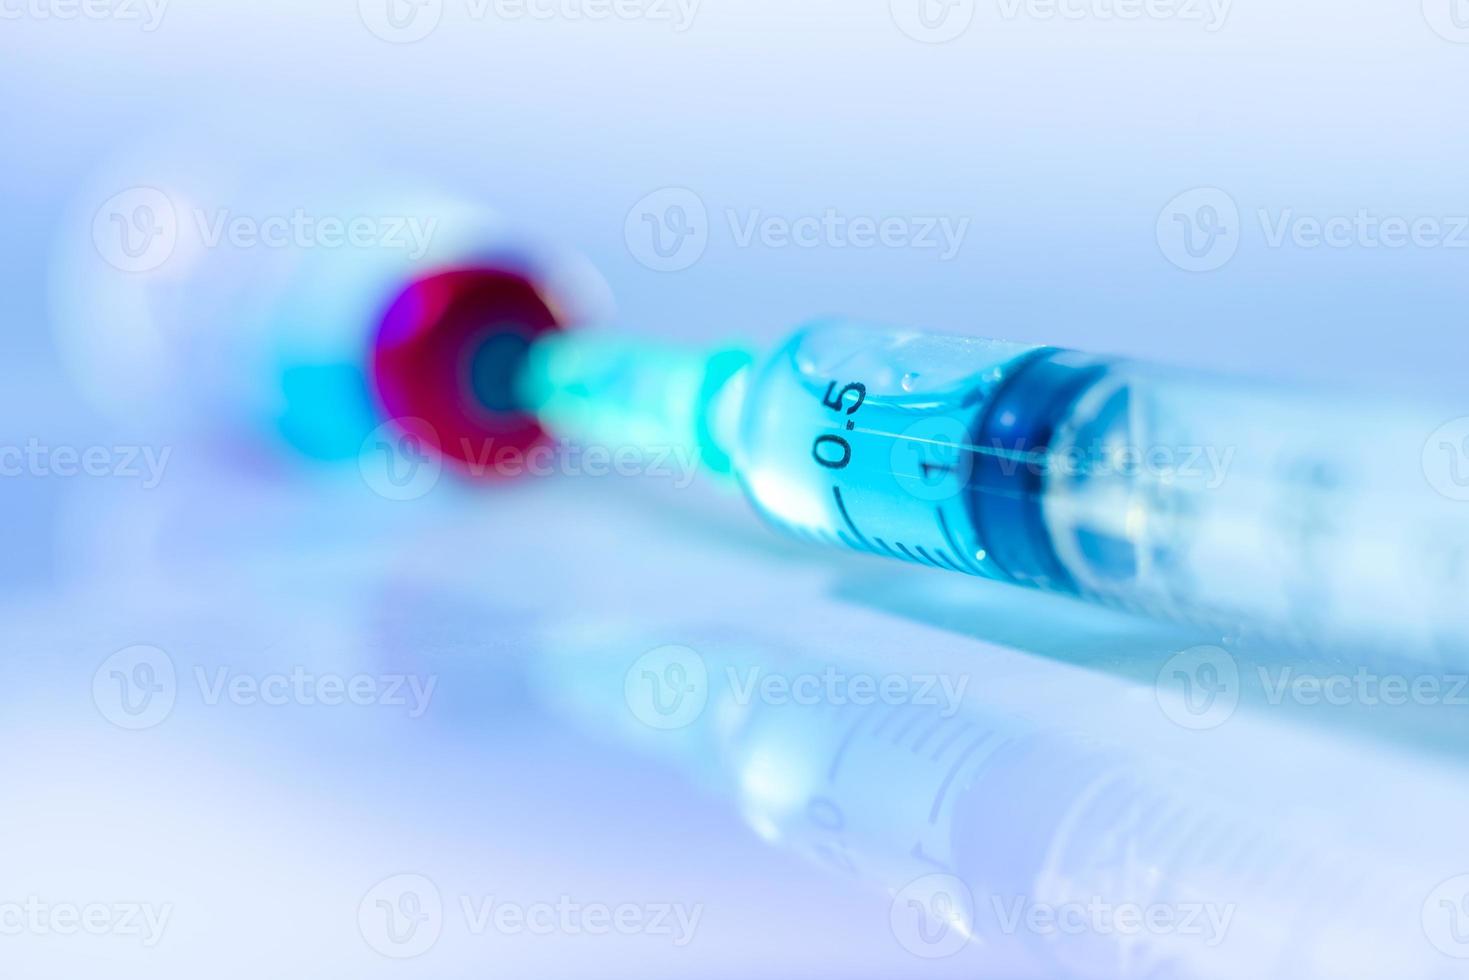 coronavirusvaccin coronavirusvaccinatie met vaccinflacon en spuitinjectiehulpmiddel voor vaccinatiebehandeling. op een mooie achtergrond foto